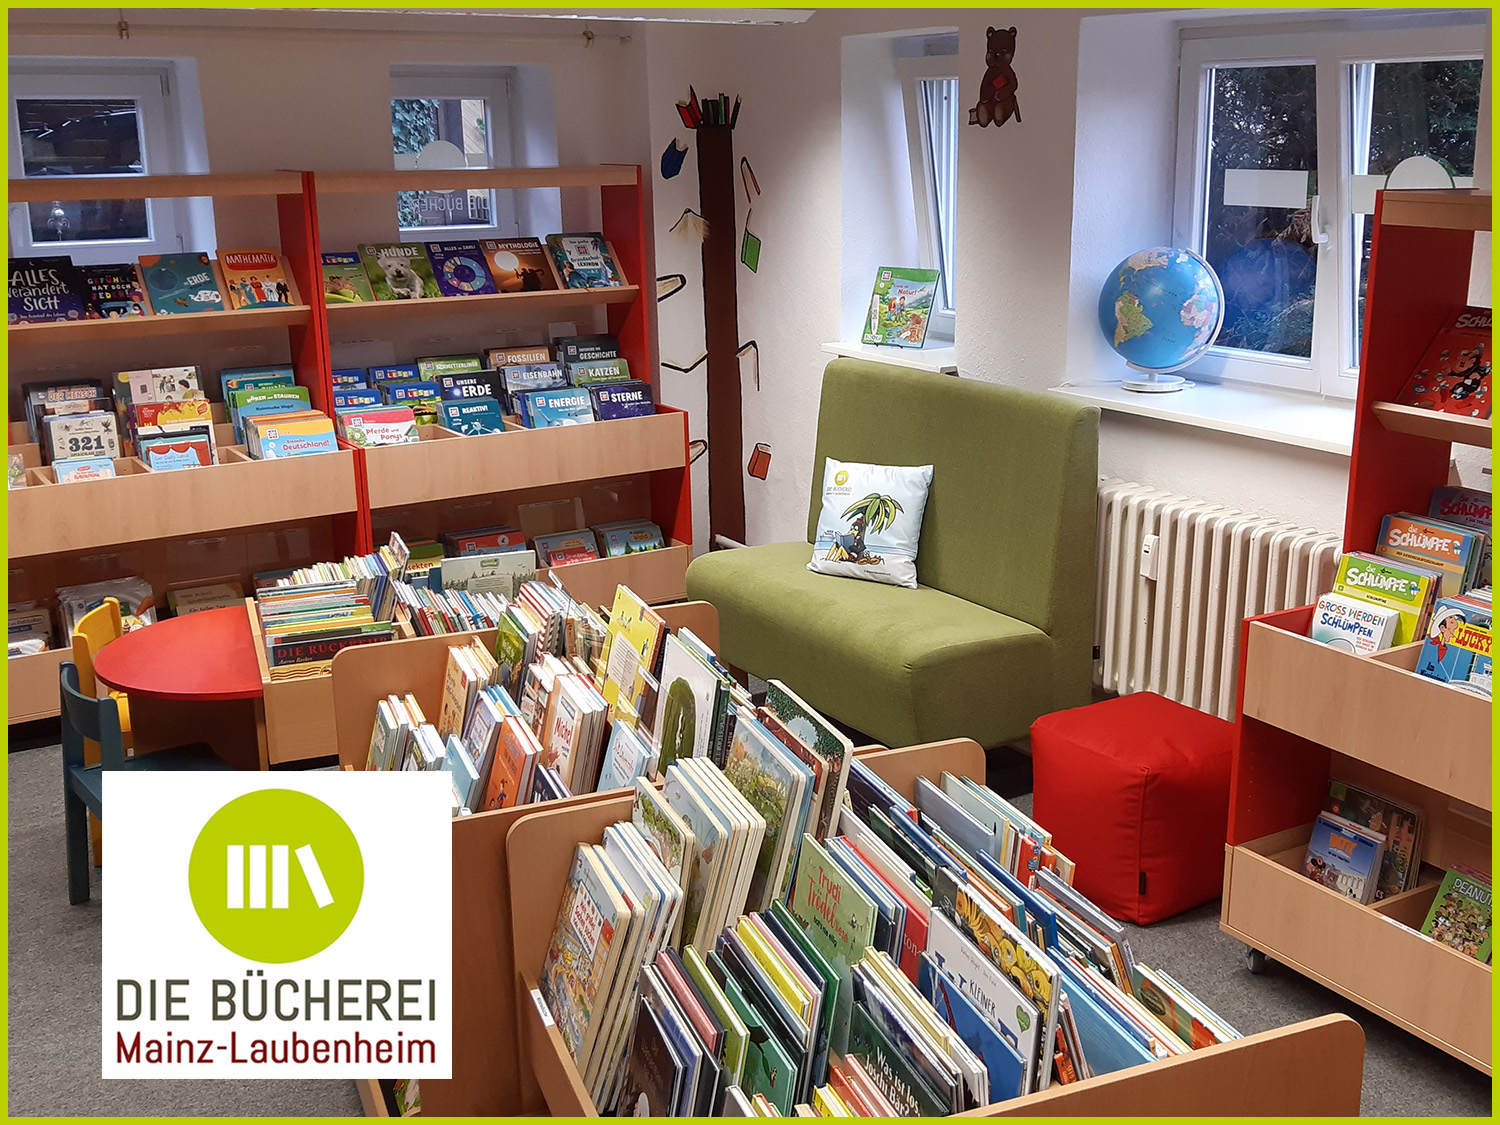 Herzliche Einladung – Bitte nehmen Sie Platz! (c) Die Bücherei Mainz-Laubenheim